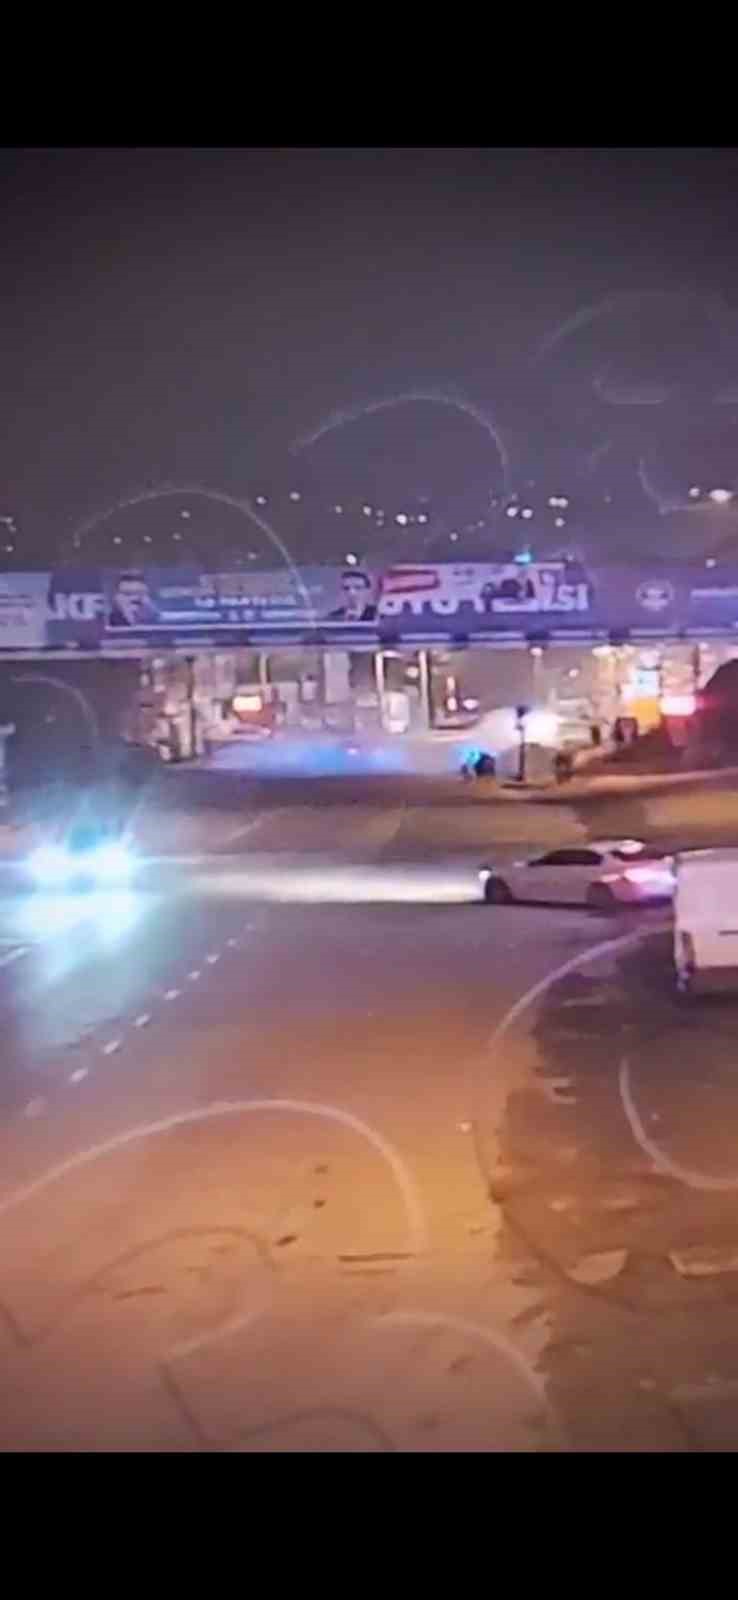 Trabzon’da 1 kişinin öldüğü, 5 kişinin yaralandığı kaza güvenlik kamerasında
